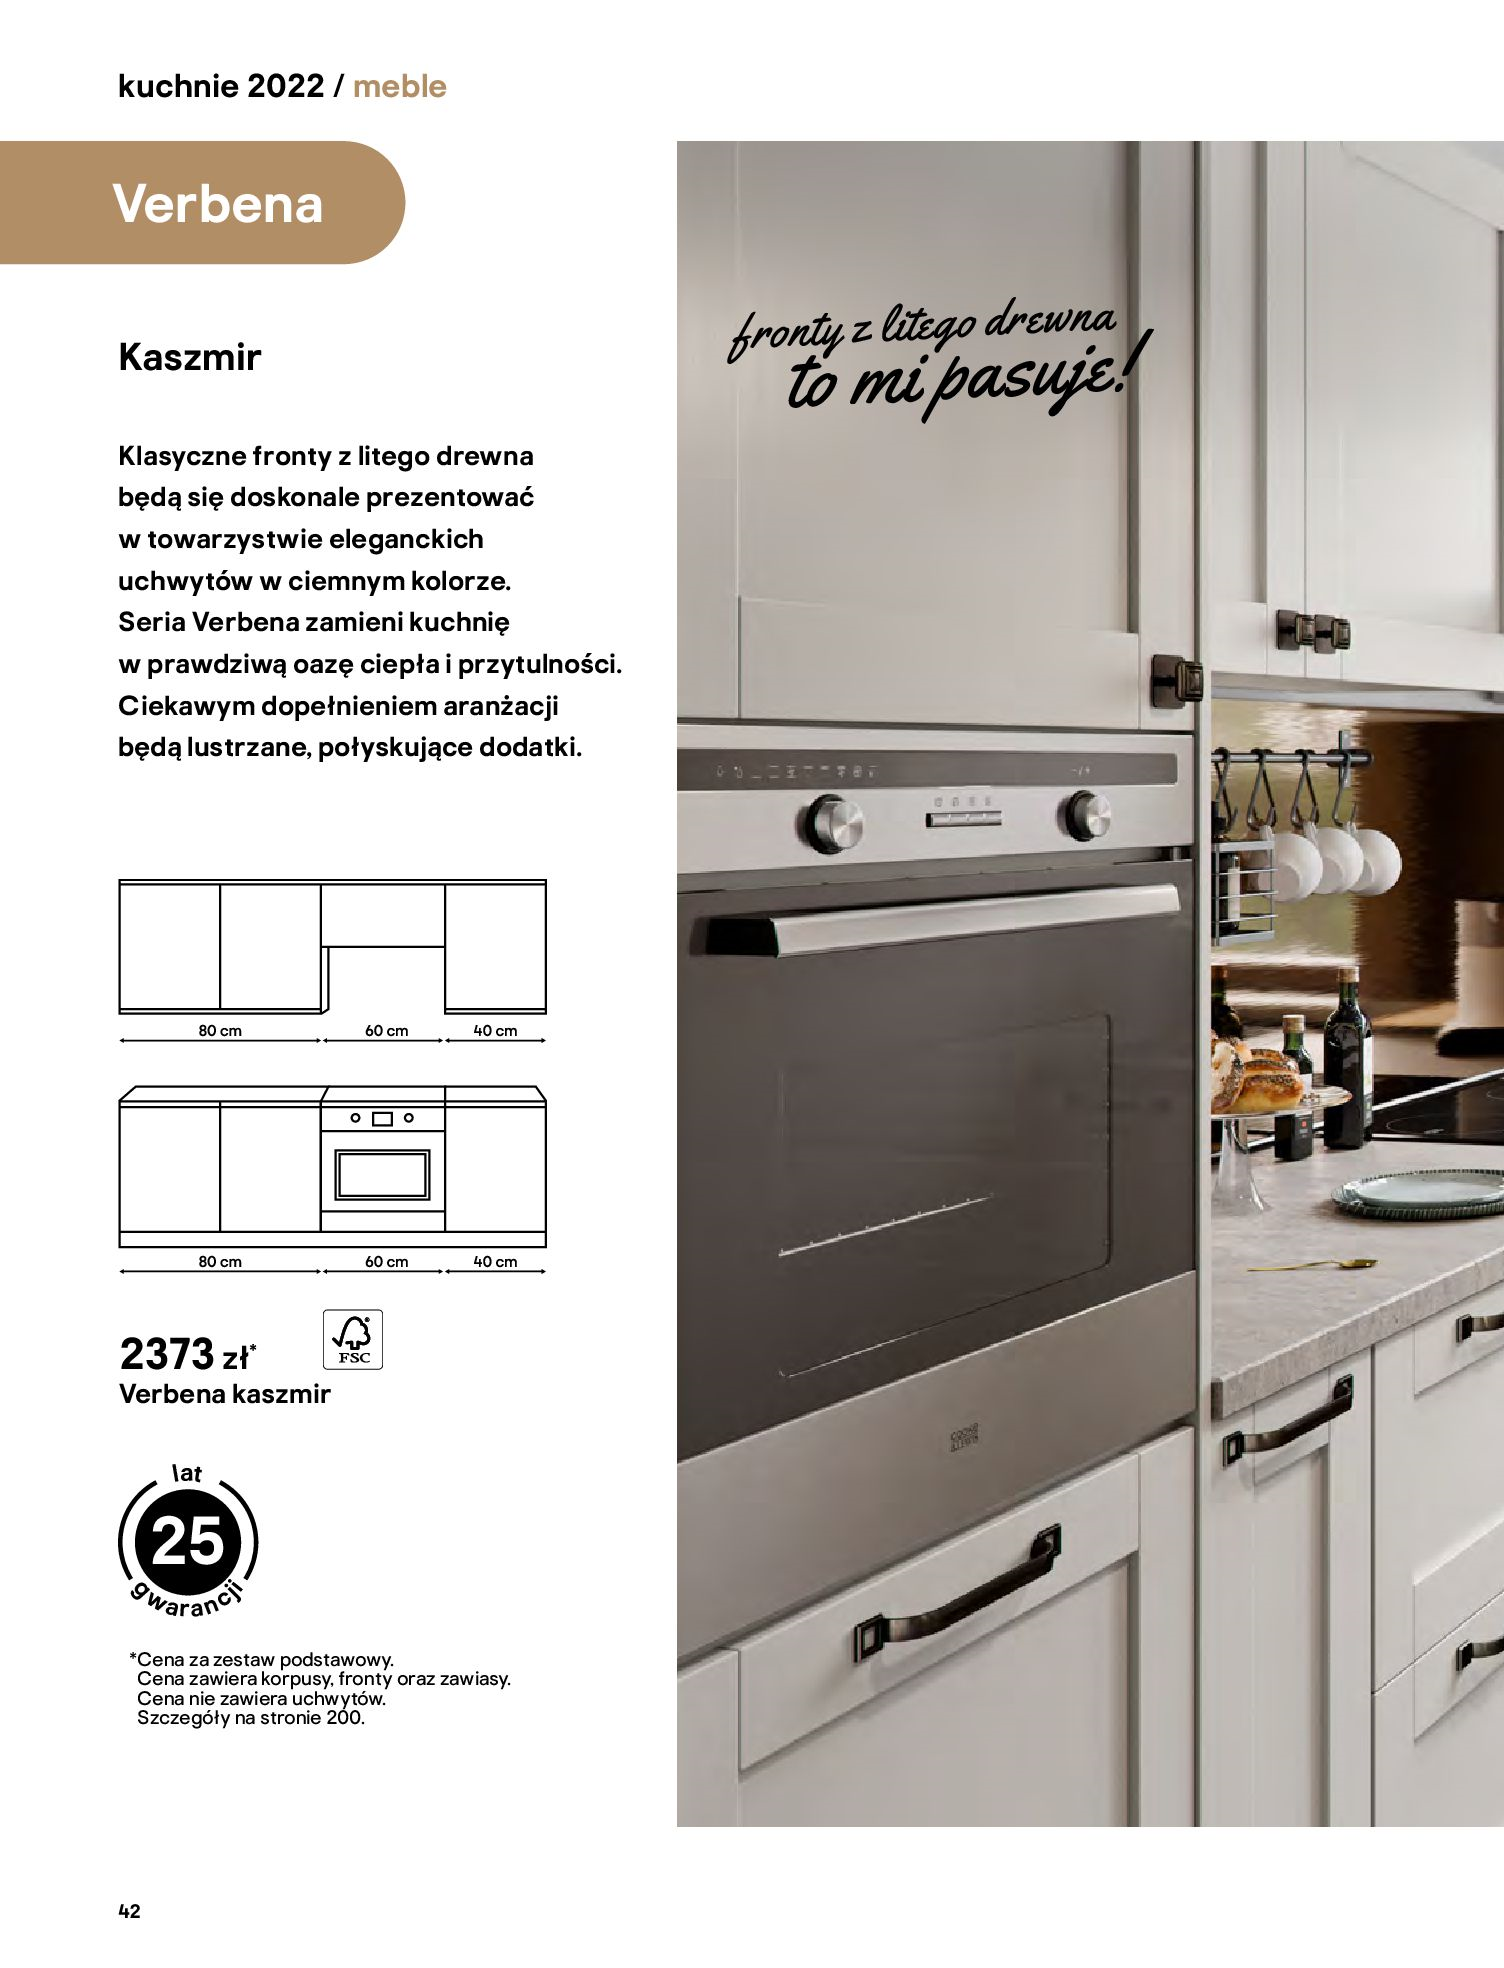 Gazetka Castorama: Castorama - Katalog Kuchnie 2022 2022-04-04 page-42